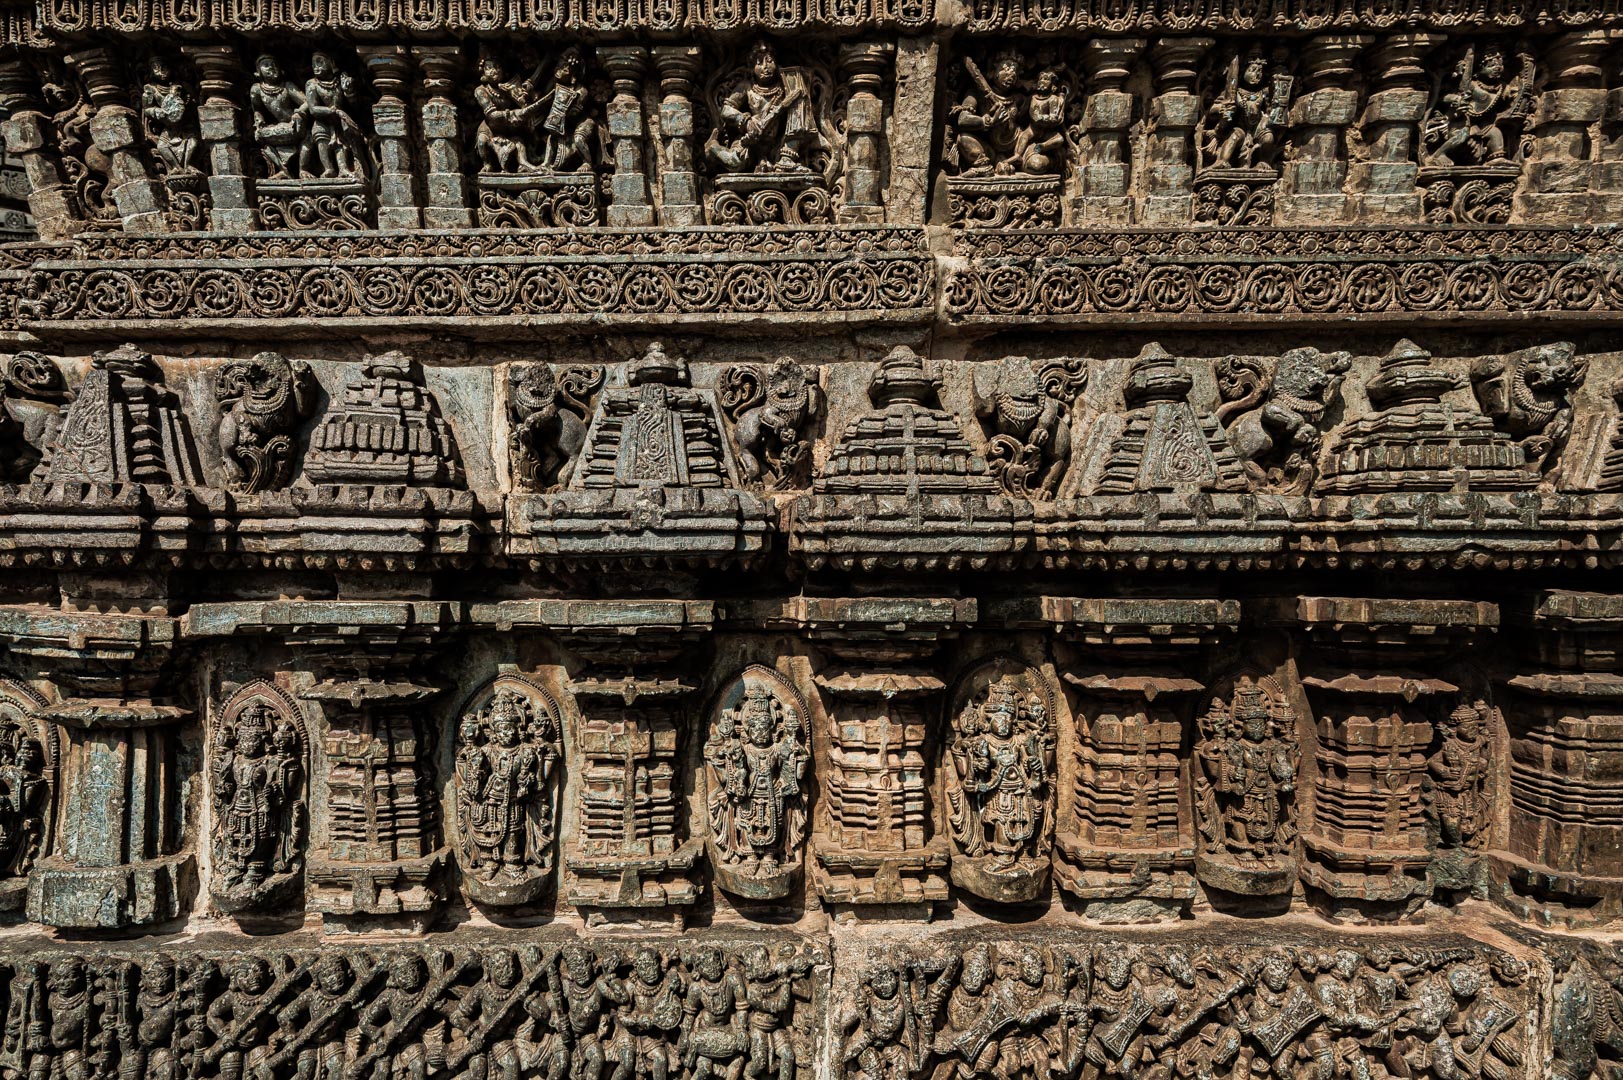 Somnathpur, Karnataka • India: Keshava Temple